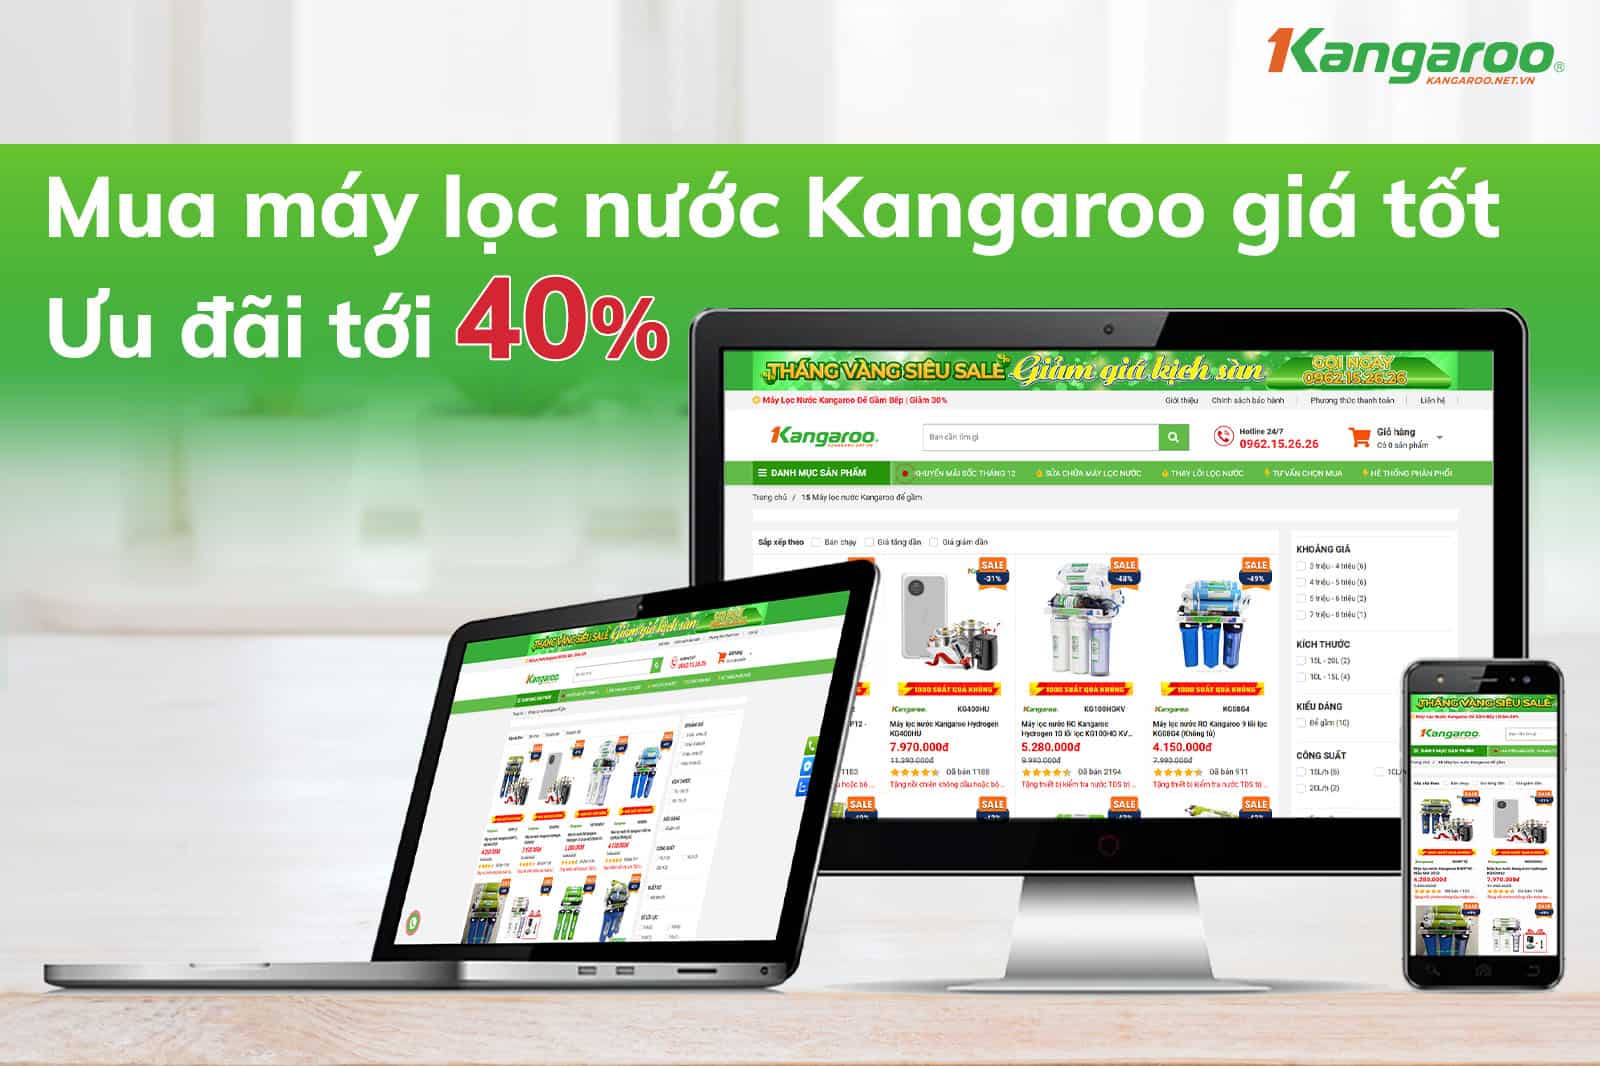 Kangaroo.net.vn - Địa chỉ mua máy lọc nước chính hãng 